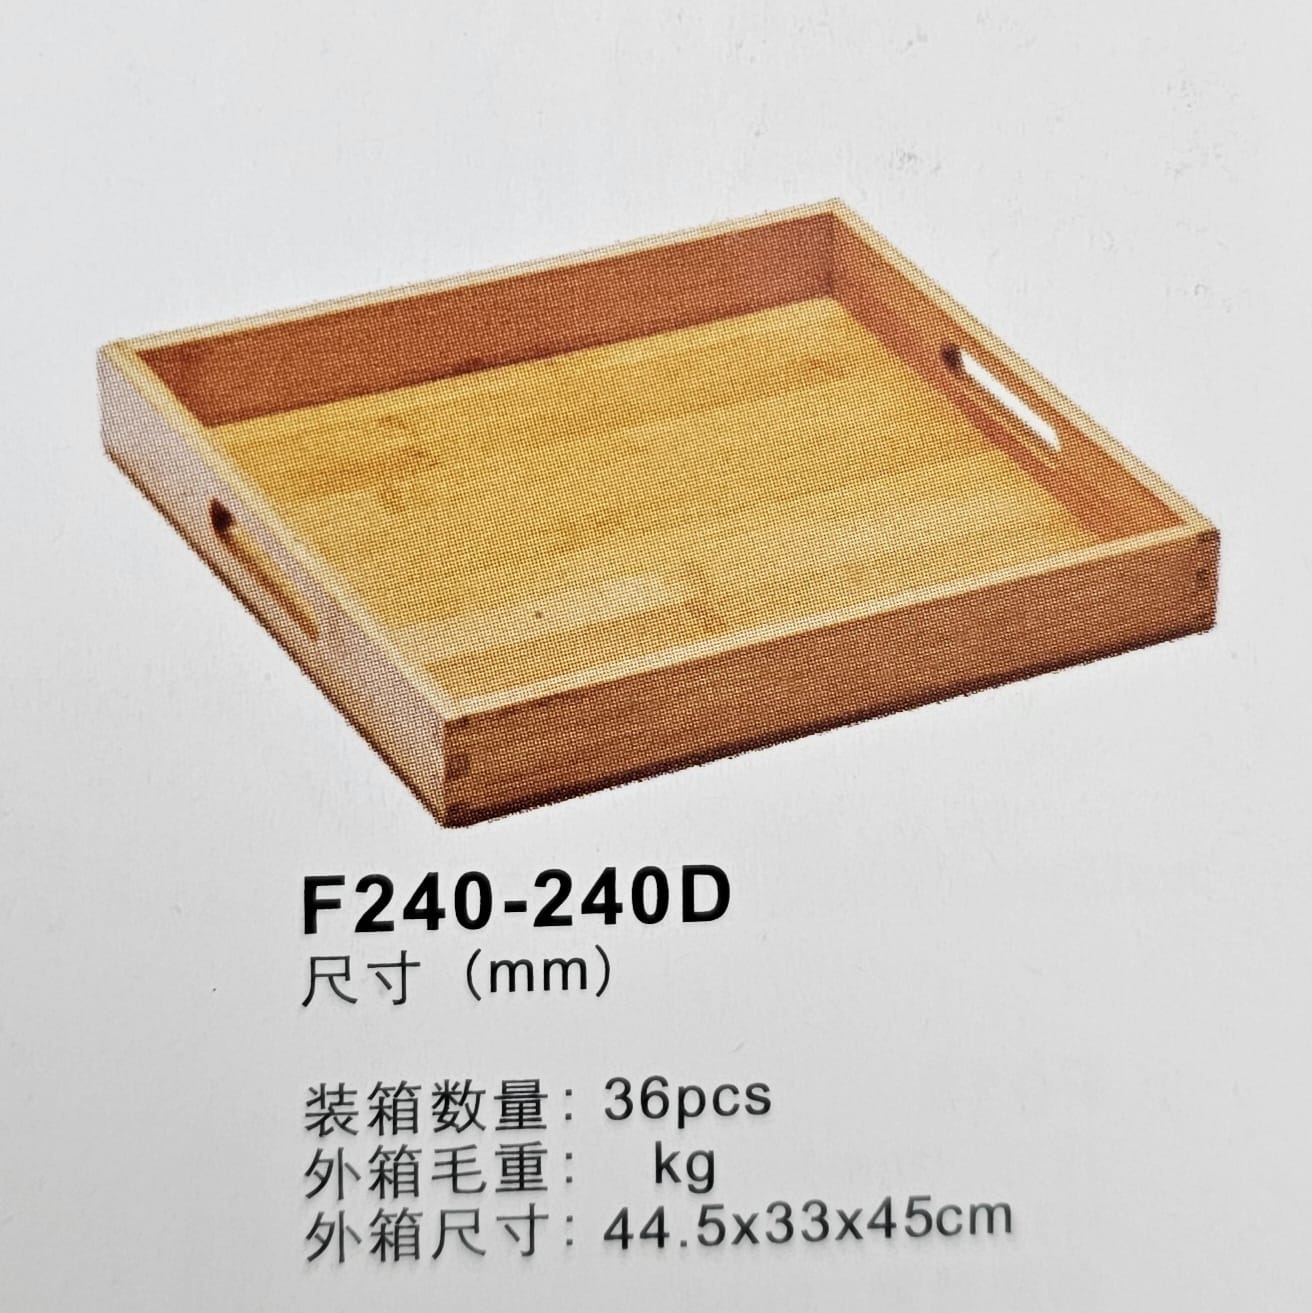 מגש עץ עם ידיות ‎ 20X20X3.5H ס"מ